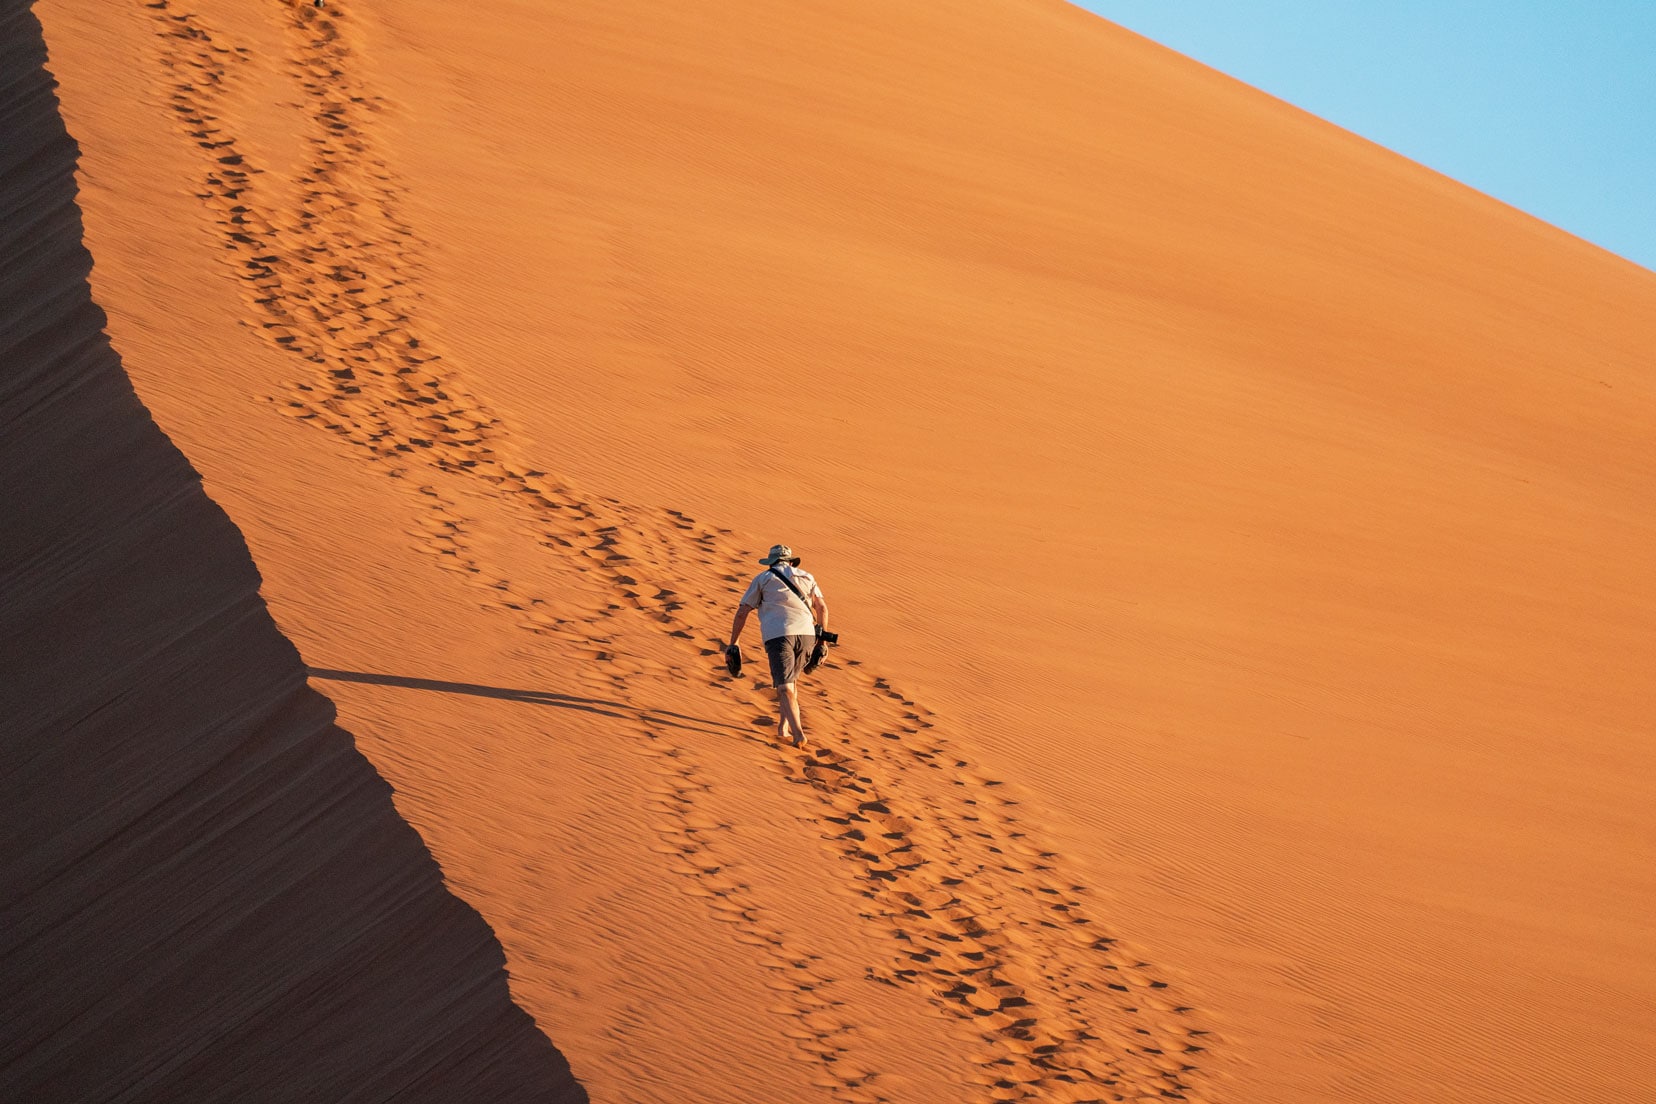 Lars climbing Dune 45